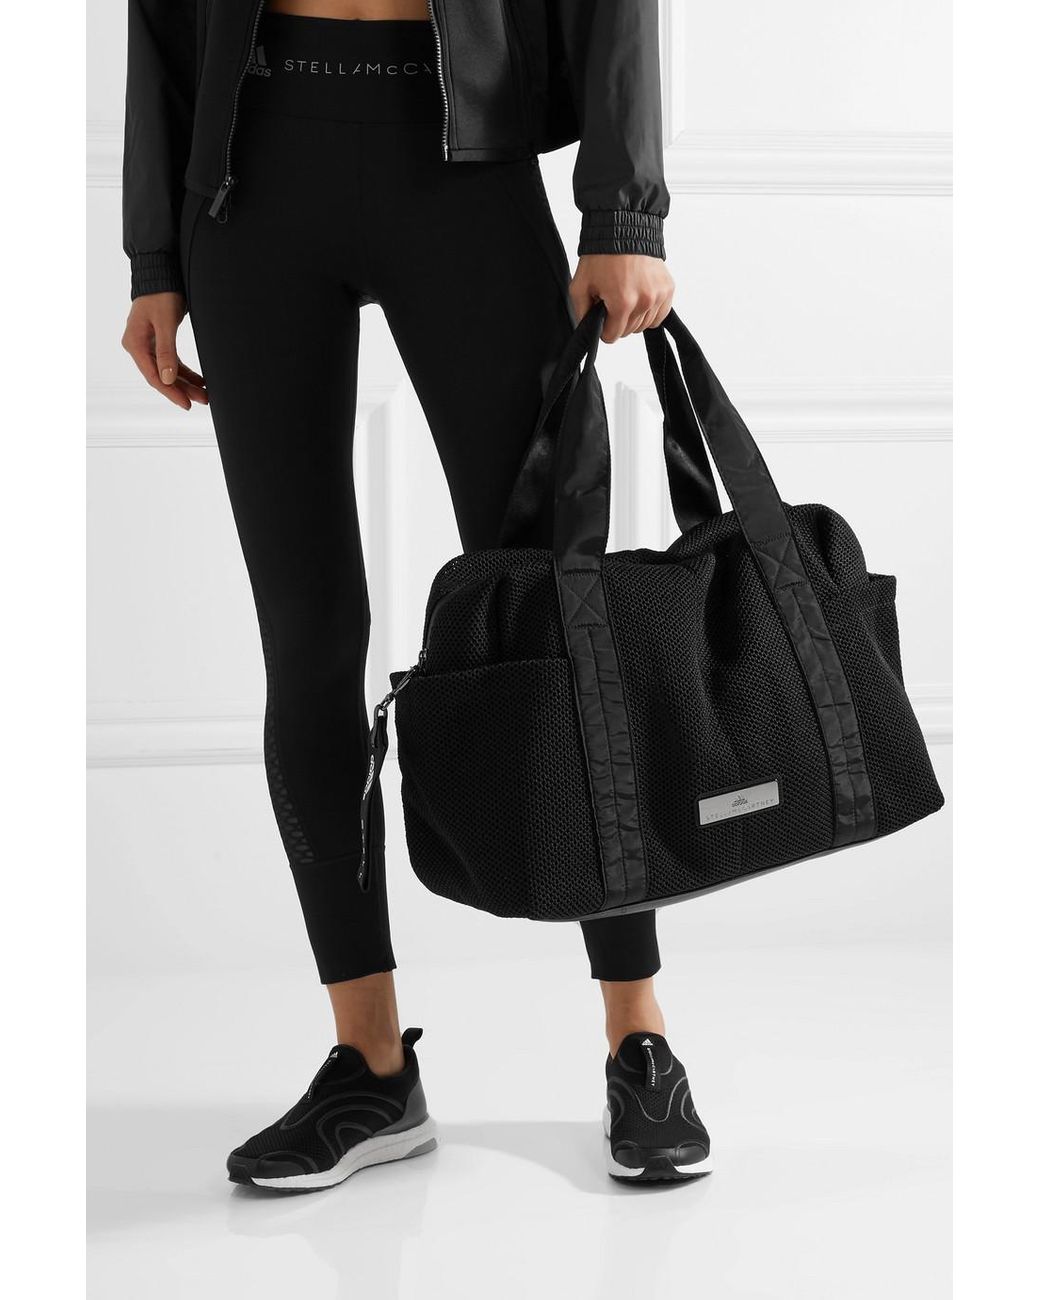 adidas By Stella McCartney Shipshape Mesh Gym Bag in Black | Lyst Canada